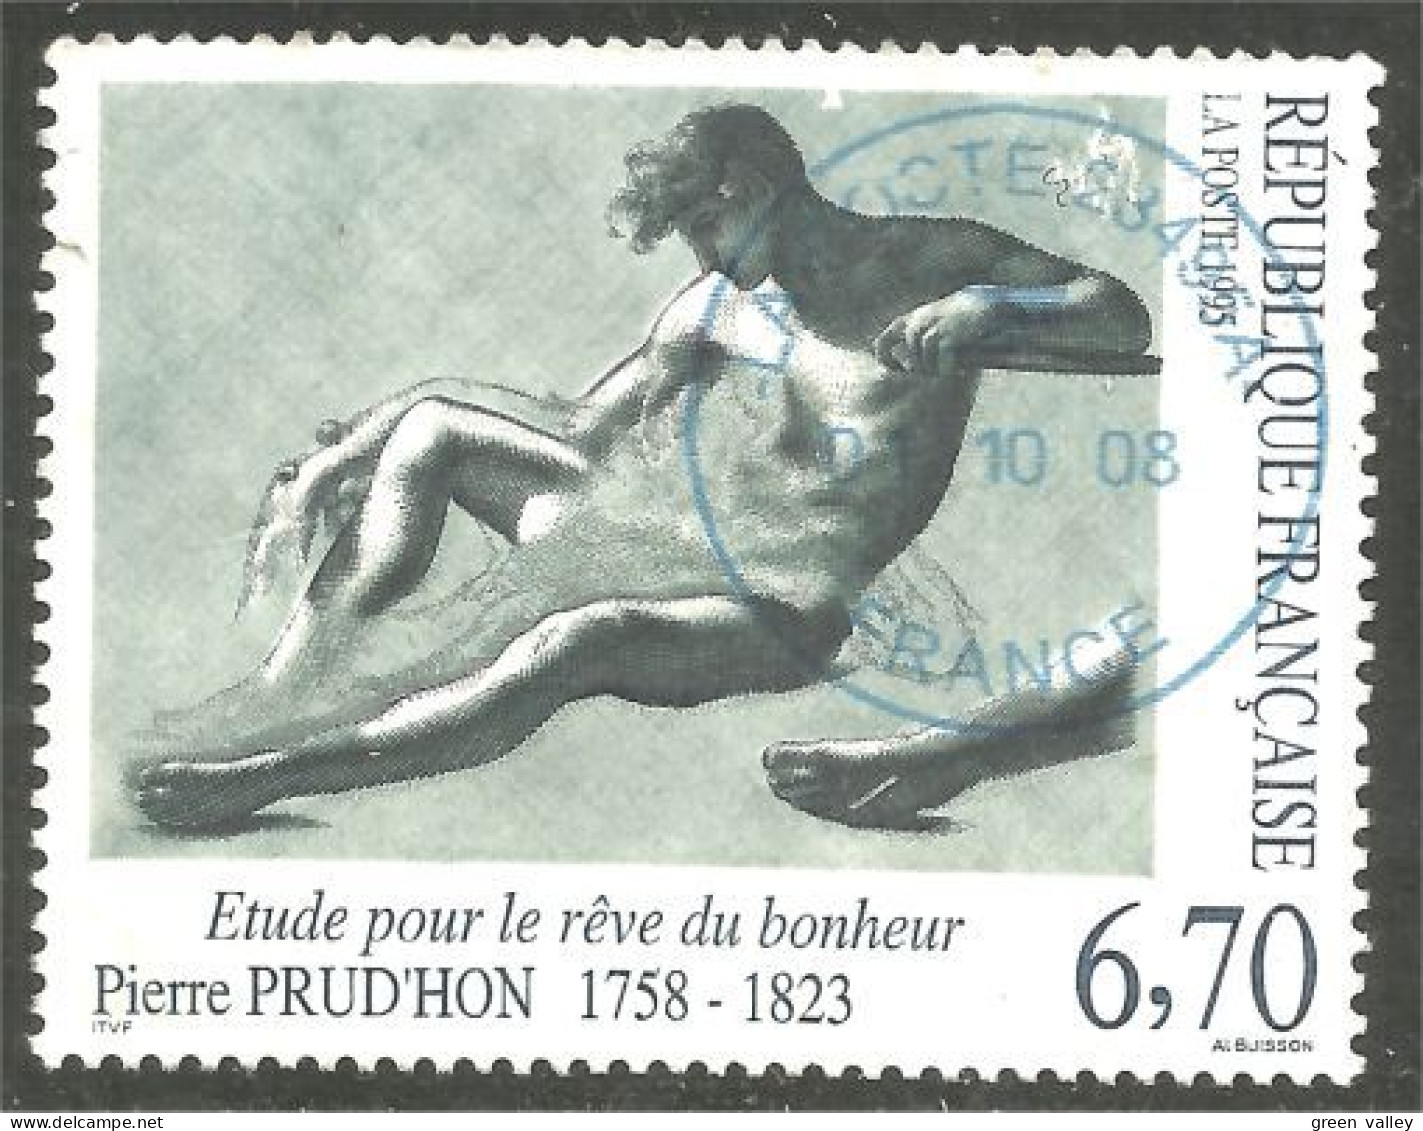 331nf-64 France Dessin Pierre Prudho Drawing Étude Bonheur - Used Stamps